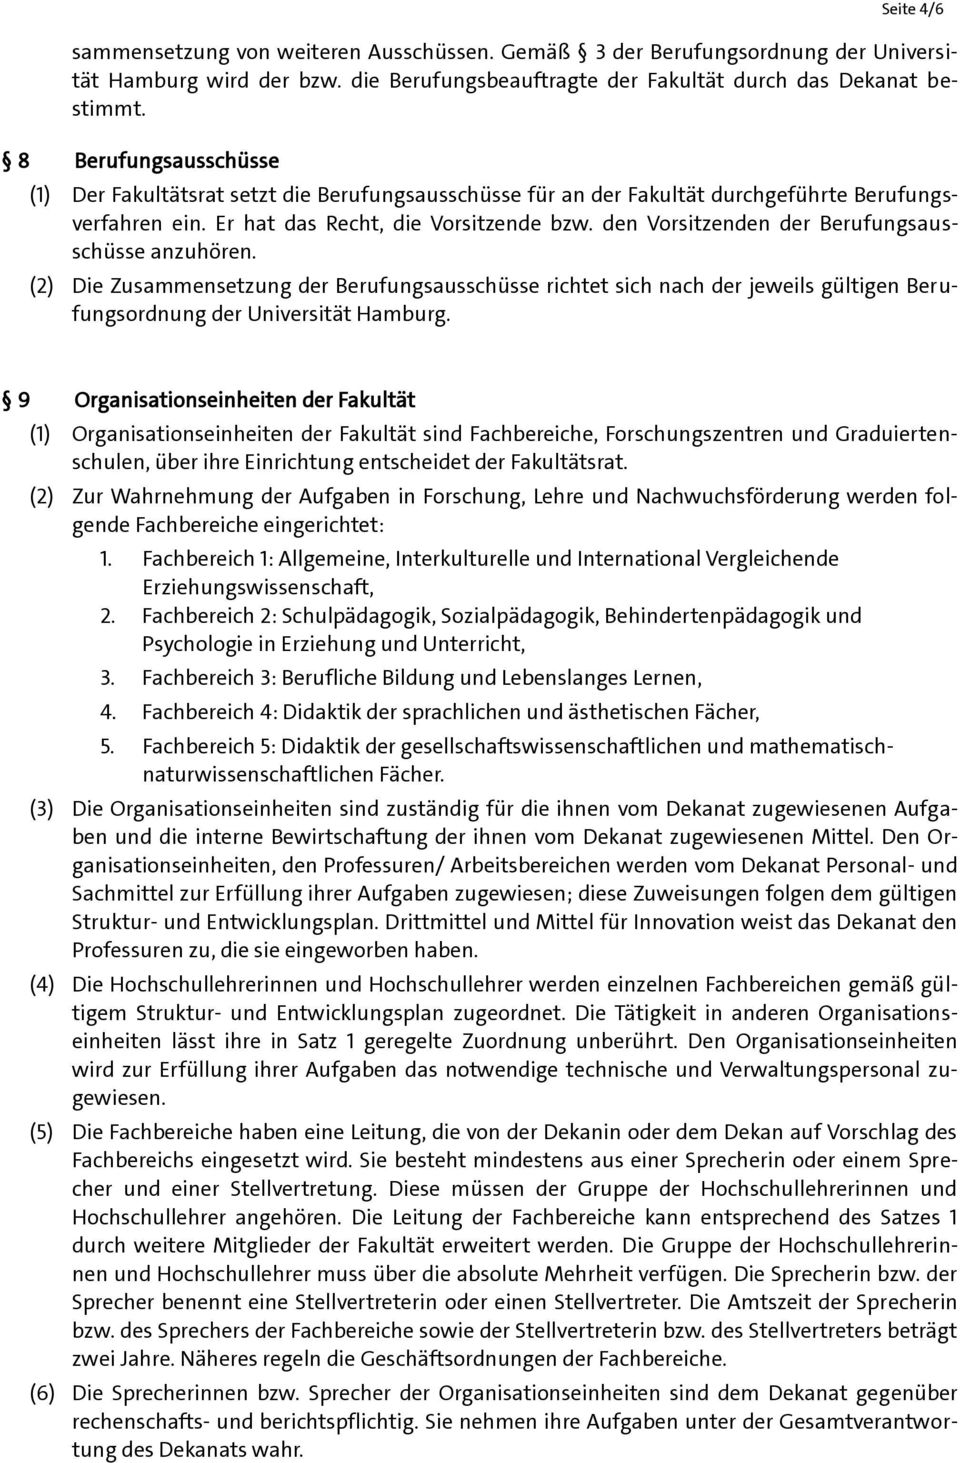 den Vorsitzenden der Berufungsausschüsse anzuhören. (2) Die Zusammensetzung der Berufungsausschüsse richtet sich nach der jeweils gültigen Berufungsordnung der Universität Hamburg.